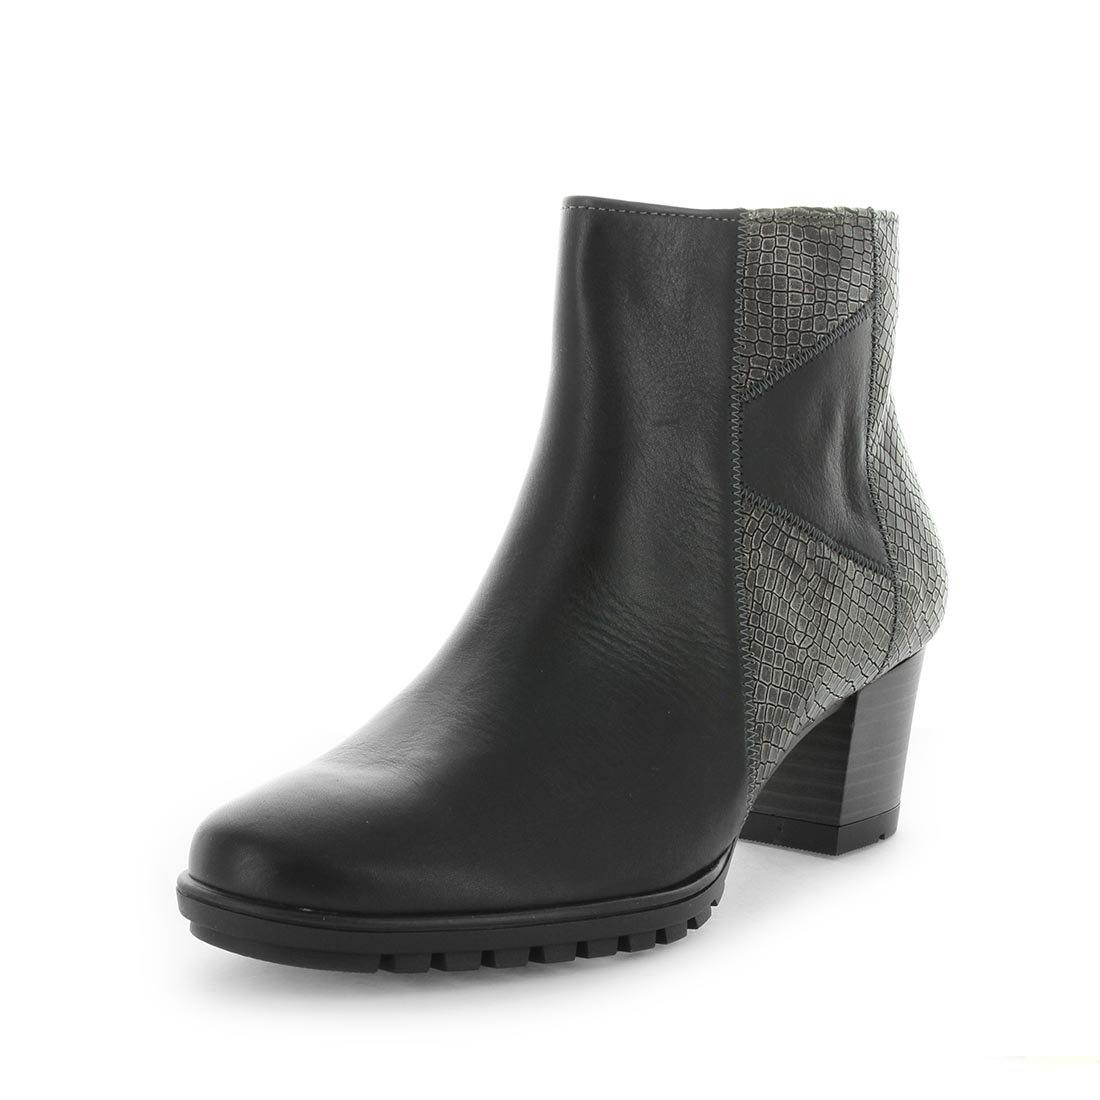 KABIRA by KIARFLEX - iShoes - Sale, Sale: 50% off, Wide Fit, Women's Shoes, Women's Shoes: Boots - FOOTWEAR-FOOTWEAR